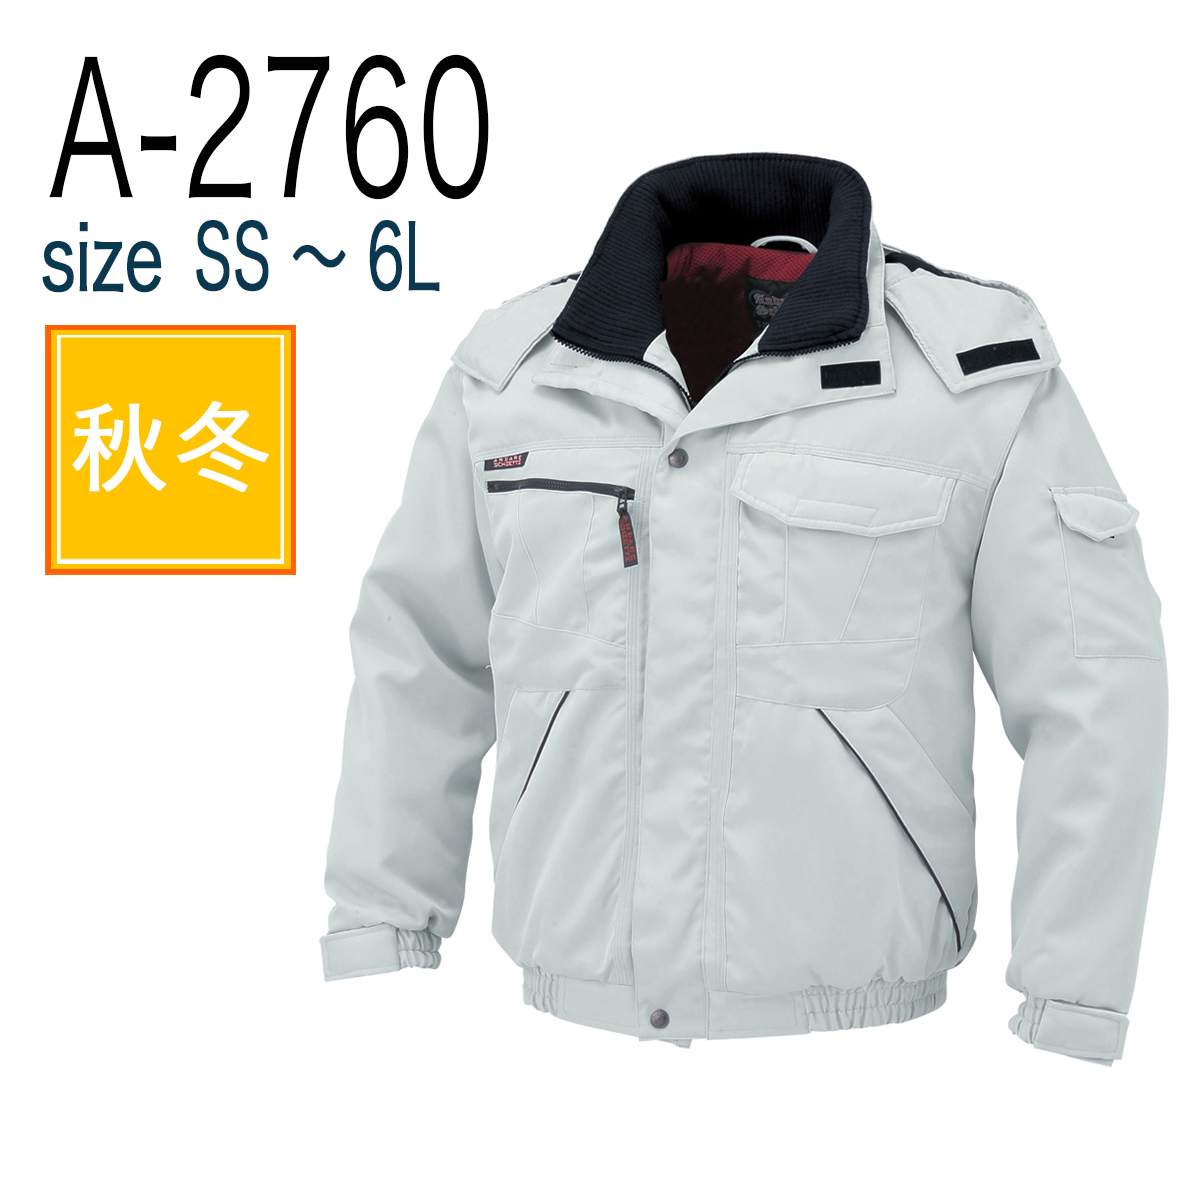 A-2766 防寒コート チャコール LL - 5